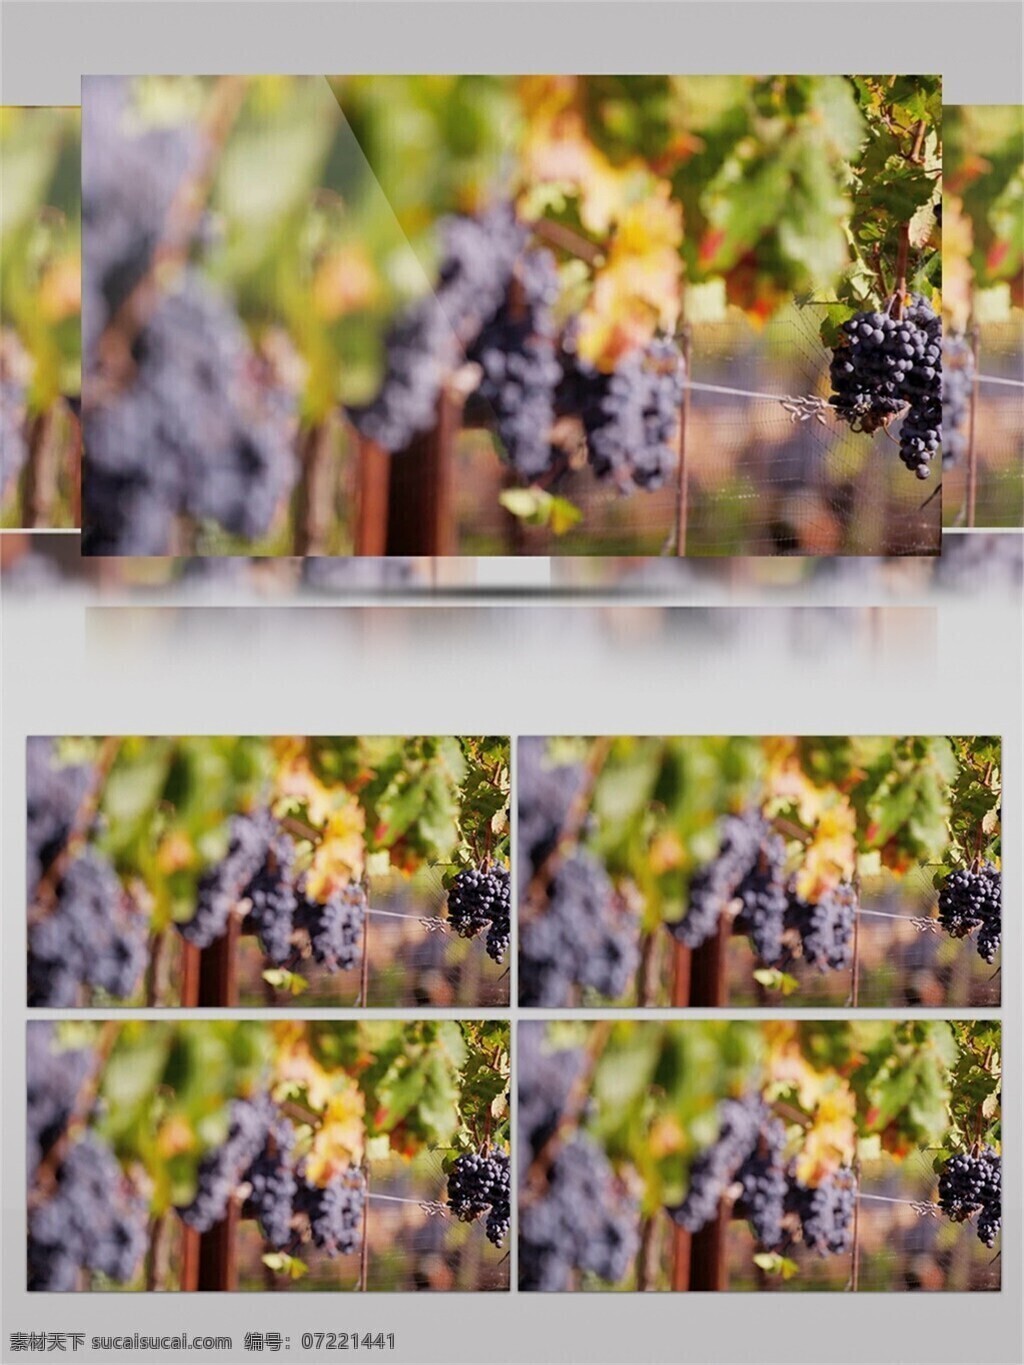 法国 葡 桃 庄园 视频 音效 新鲜 采摘 绿色 红酒 叶子 水果 视频音效